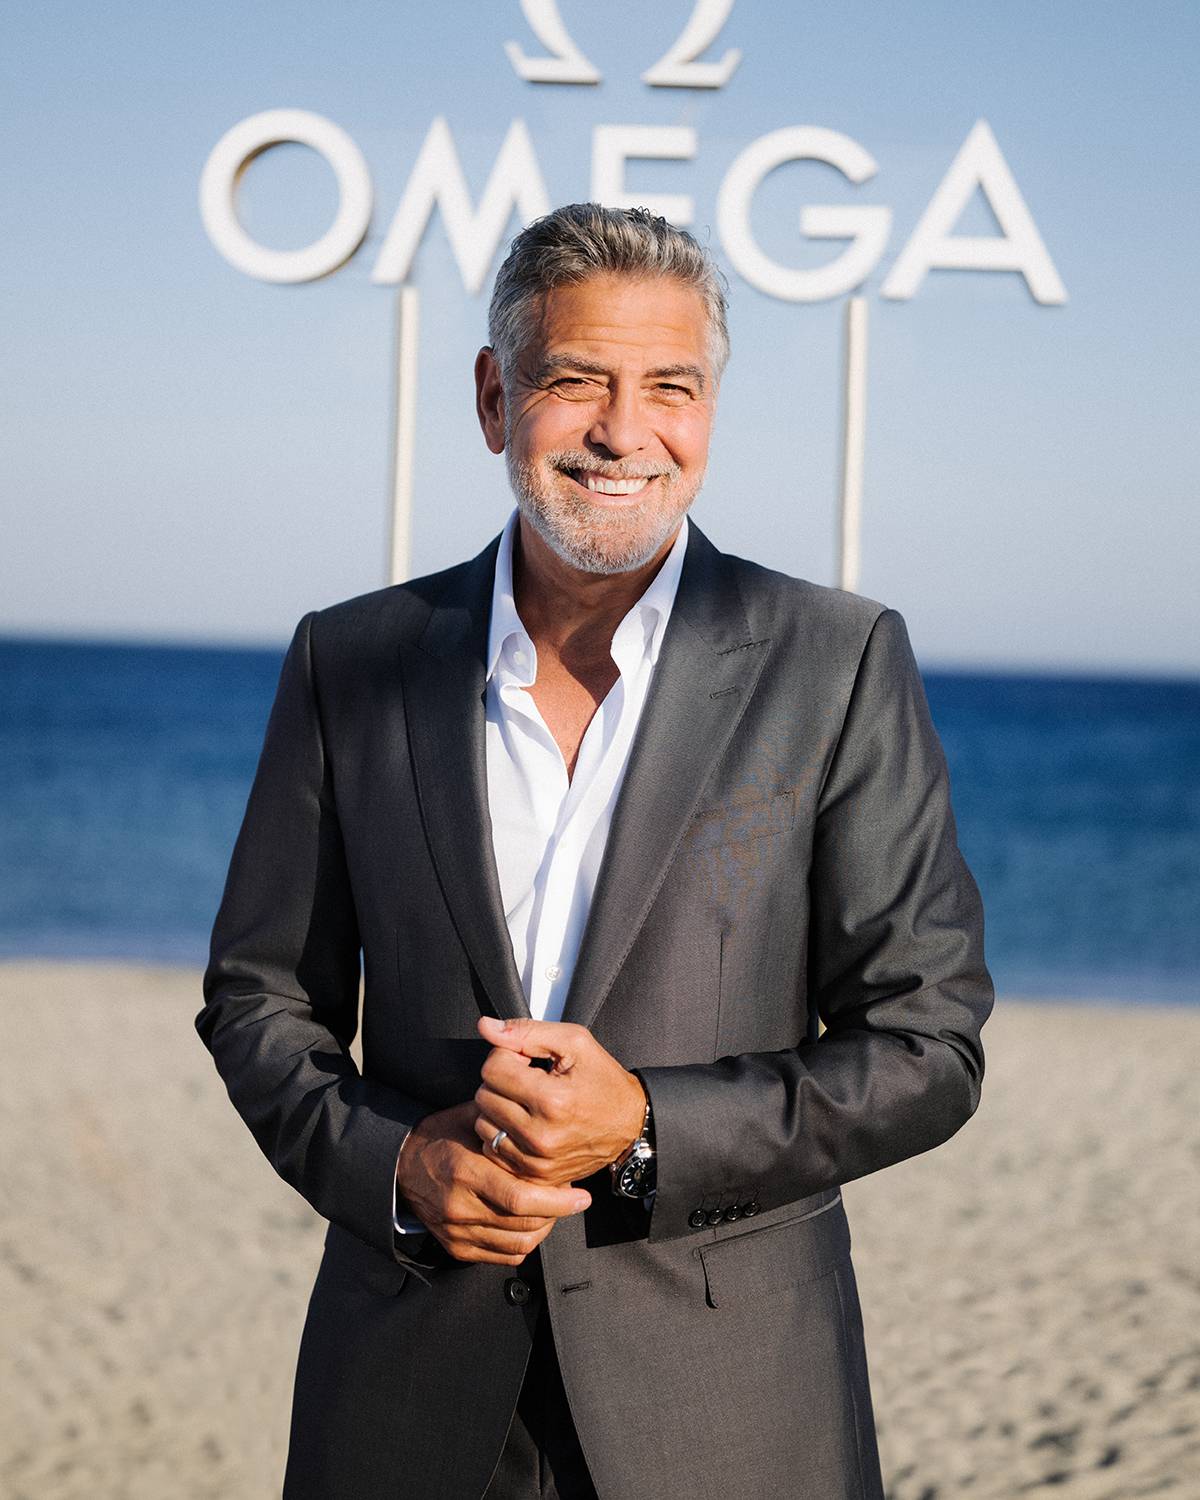 Jubileuszowa kolekcja Seamaster marki Omega. Z okazji 75-lecia powstania kultowej linii zegarków Seamaster, Omega przedstawiła kolekcję jedenastu zegarków w kolorze Summer Blue. Z marką świętował George Clooney.